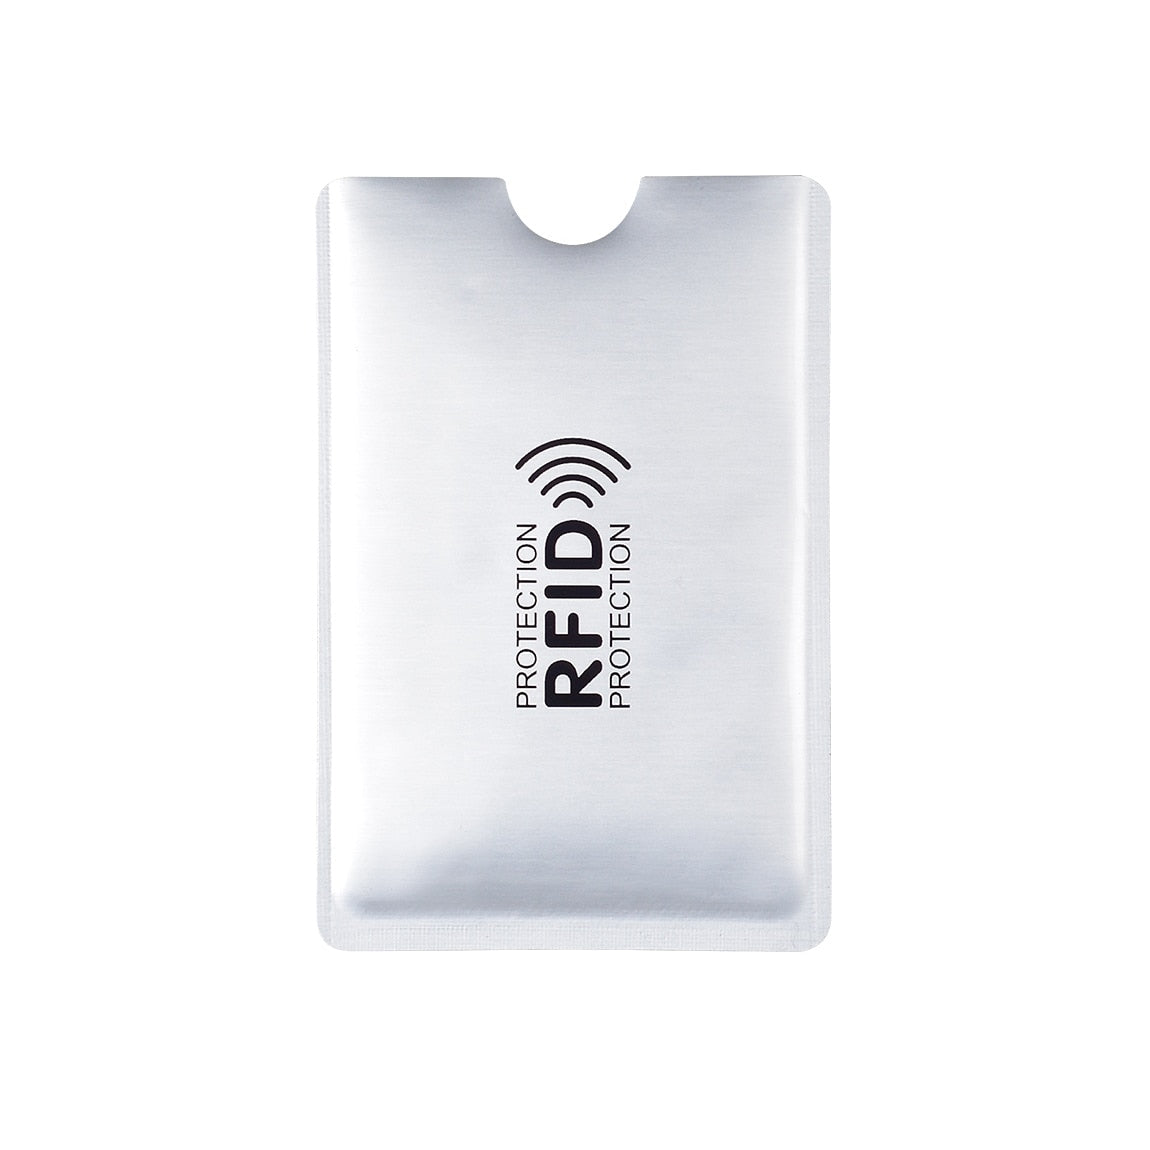 Pochette de protection RFID pour vos cartes